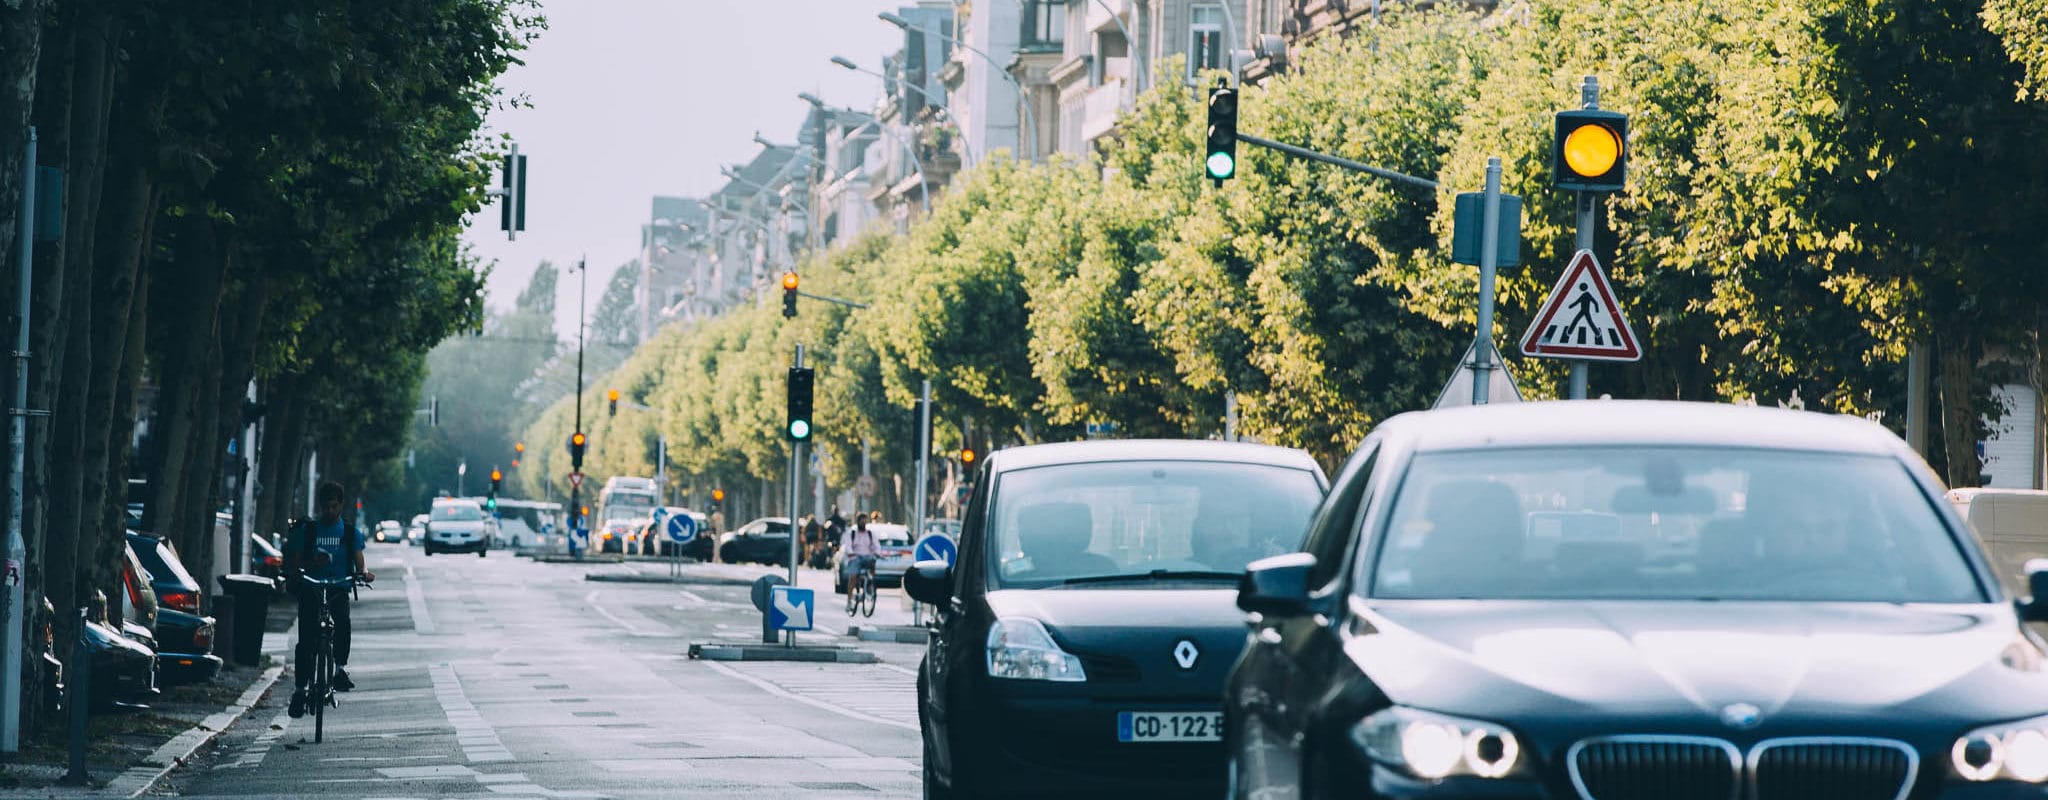 #Enjeux2020 – La réduction des voitures en dehors du centre de Strasbourg, une ambition au point mort ?